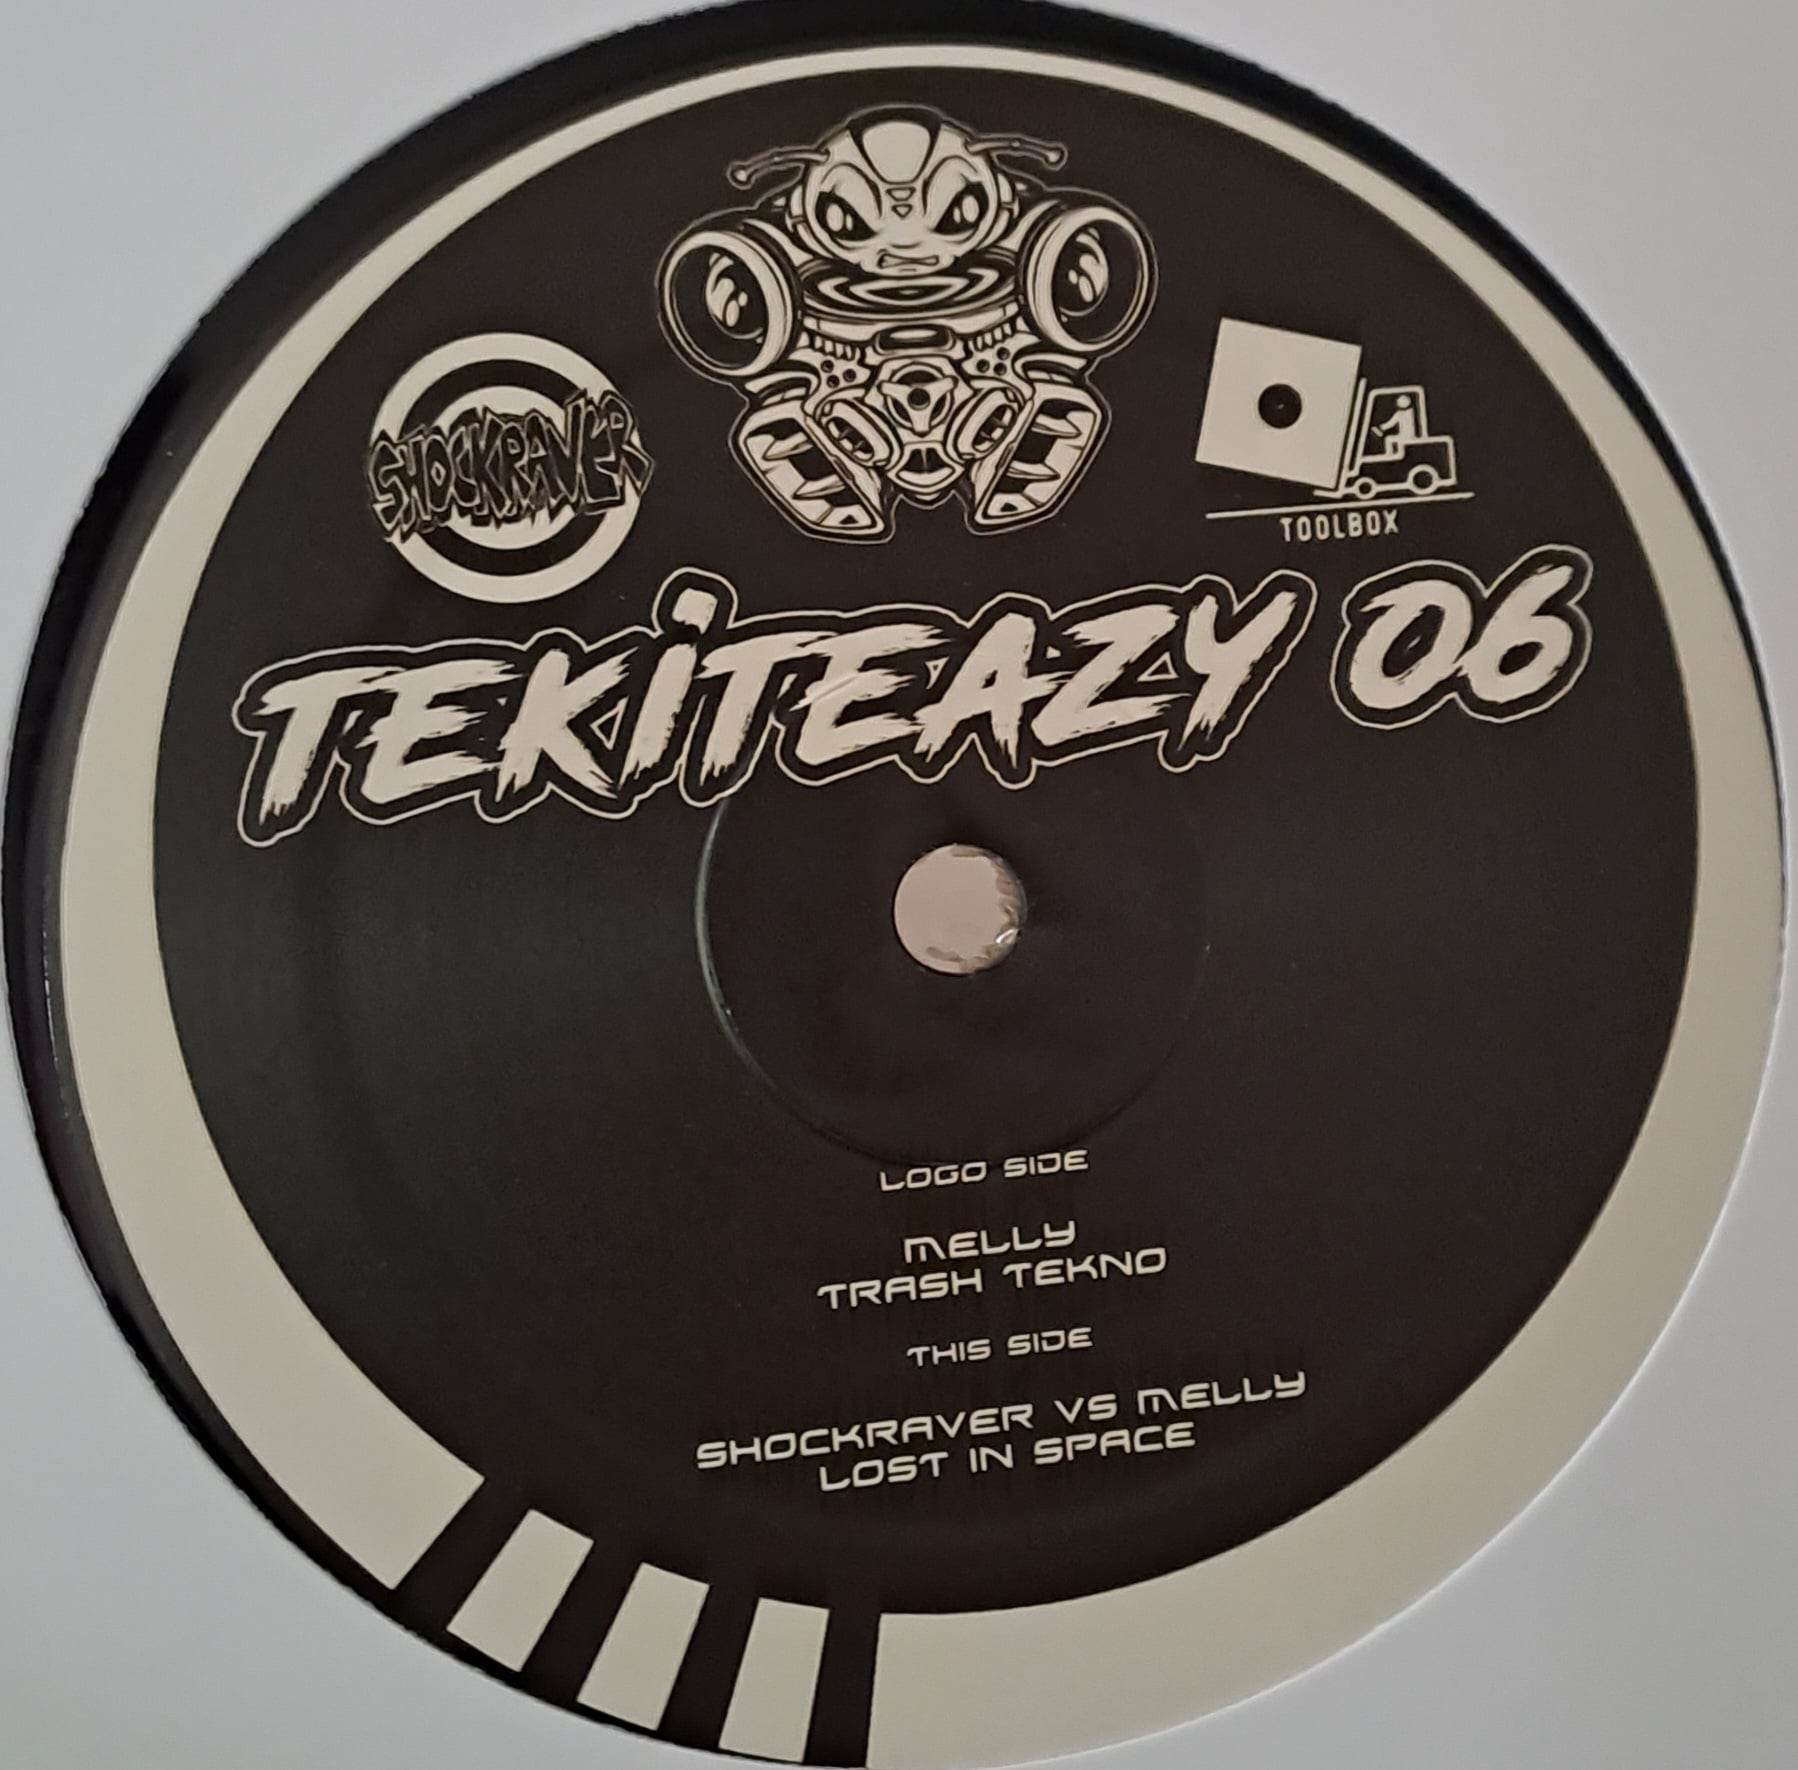 Tekiteazy 06 RP - vinyle freetekno